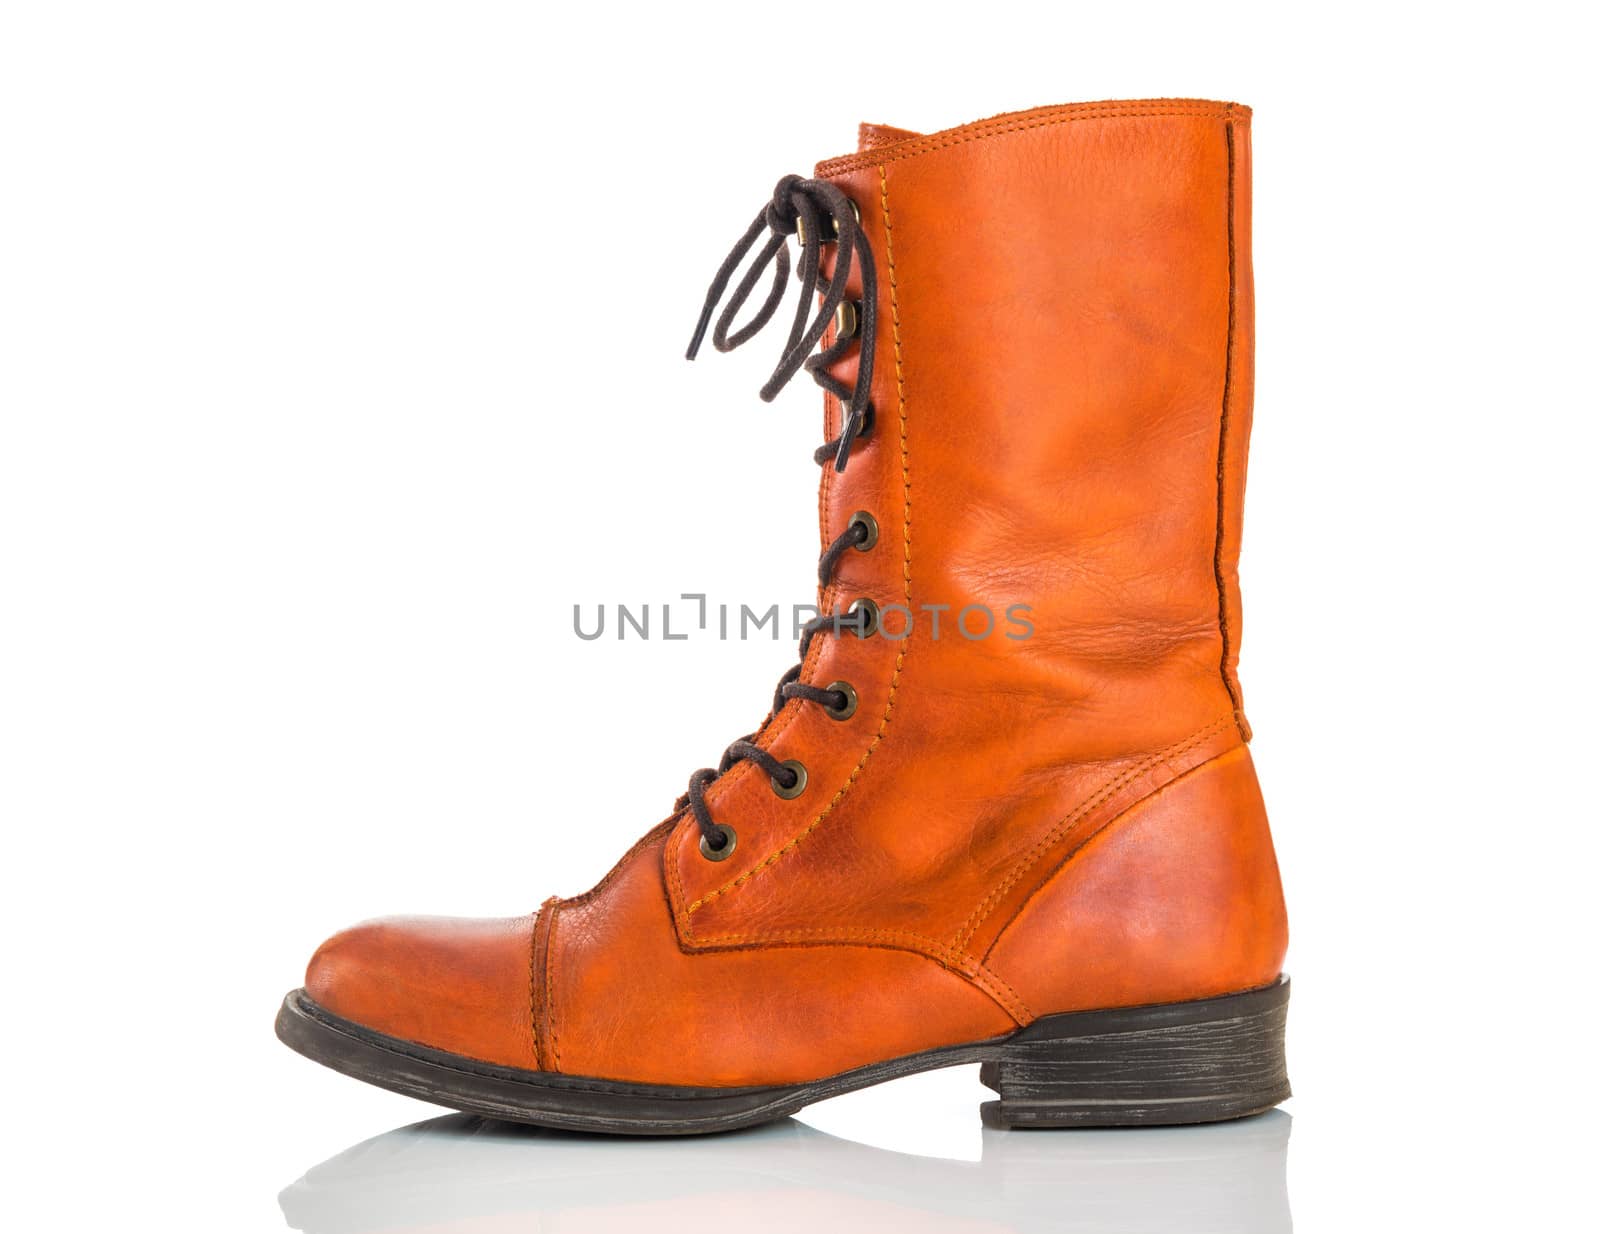 Stylish orange leather boot by anikasalsera